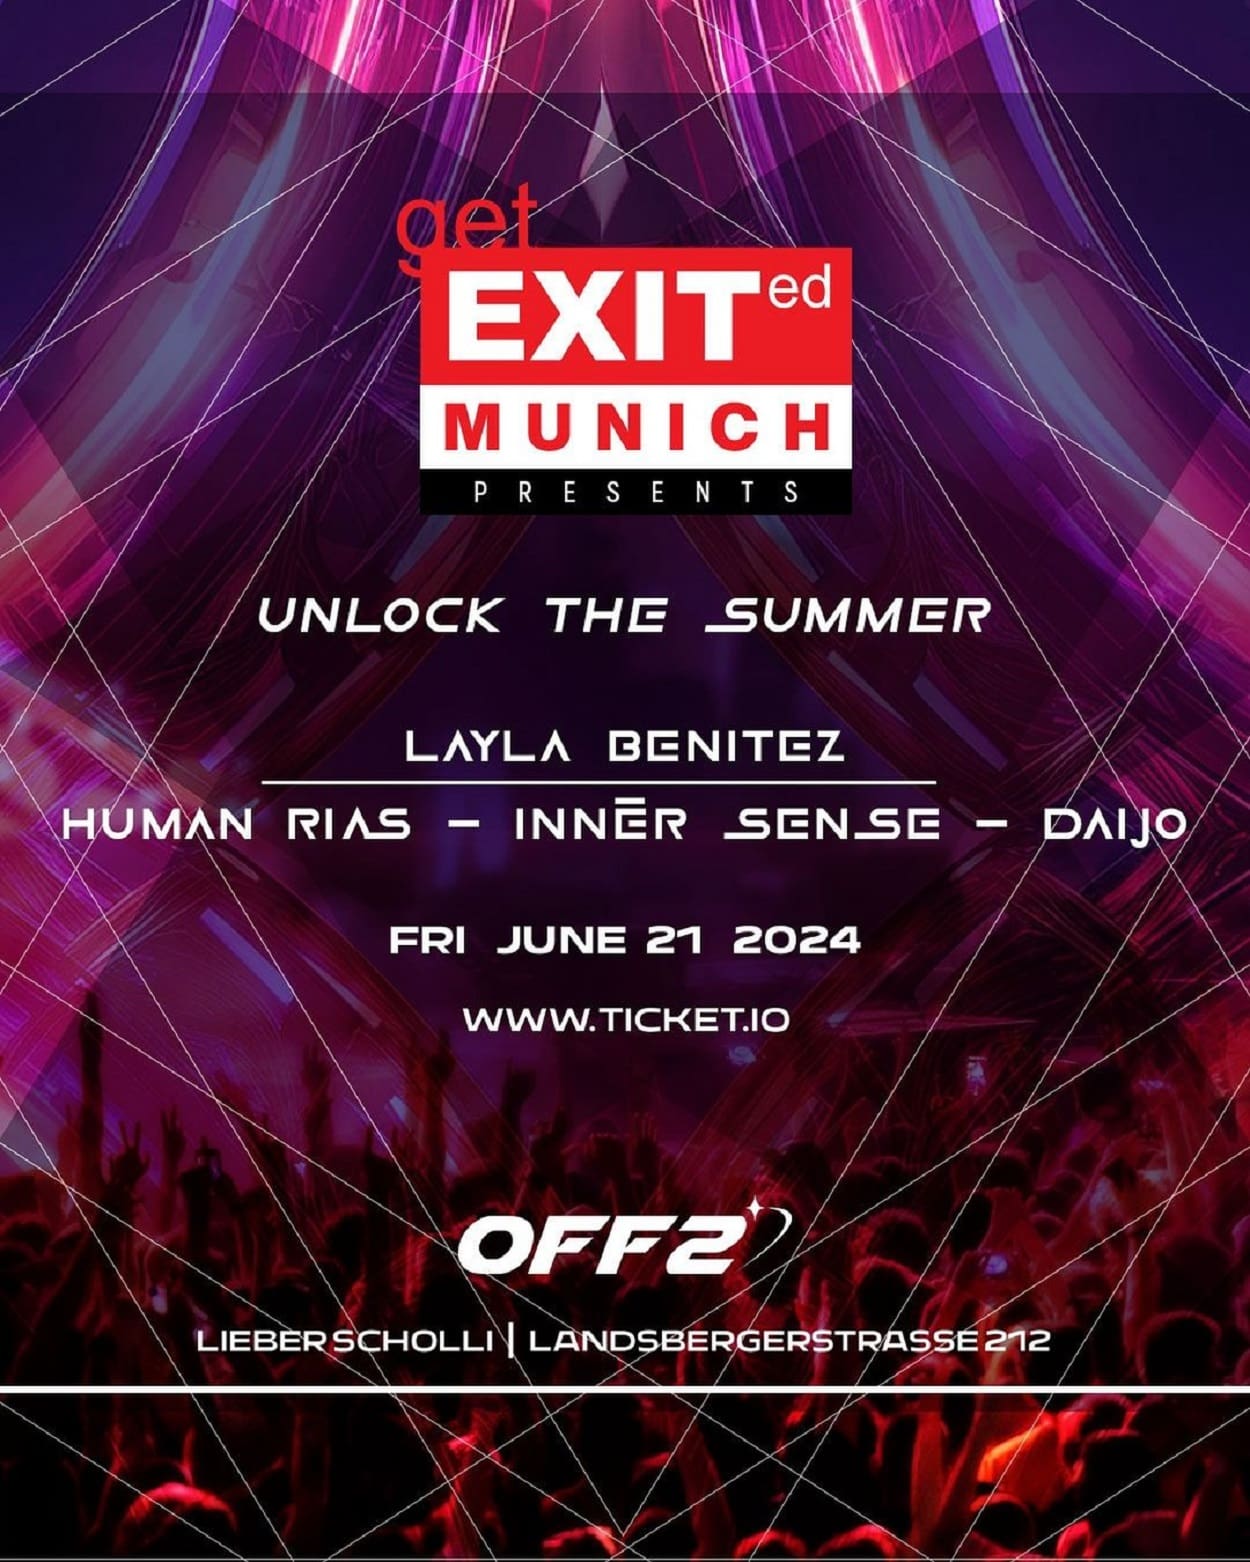 Get EXITed Munich